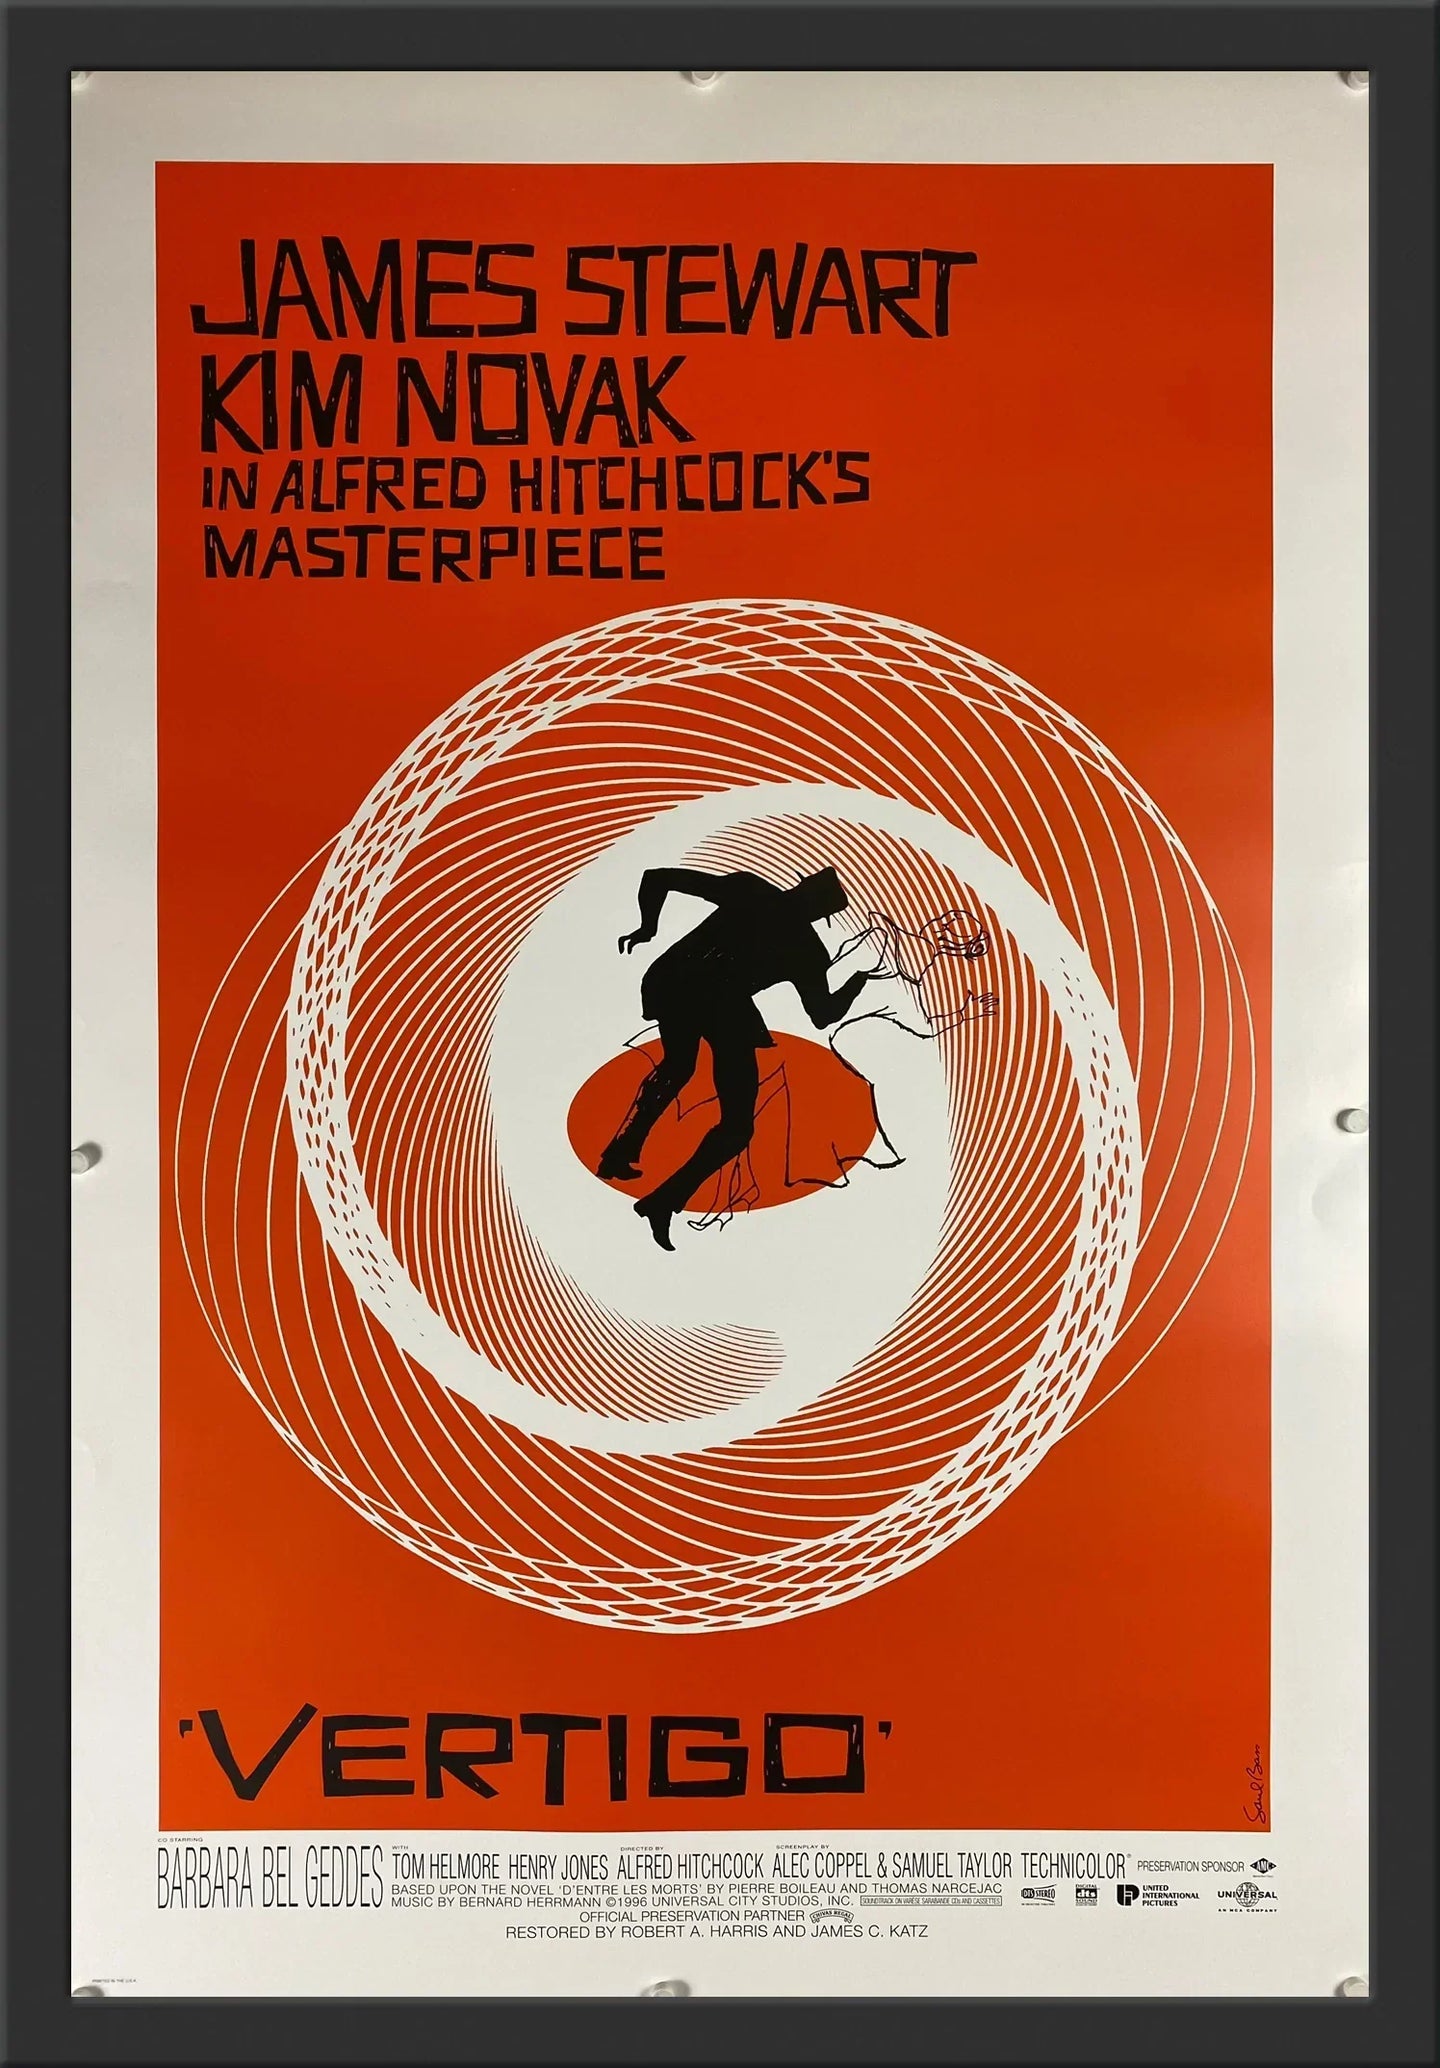 An original movie poster for the Alfred Hitchcock film Vertigo